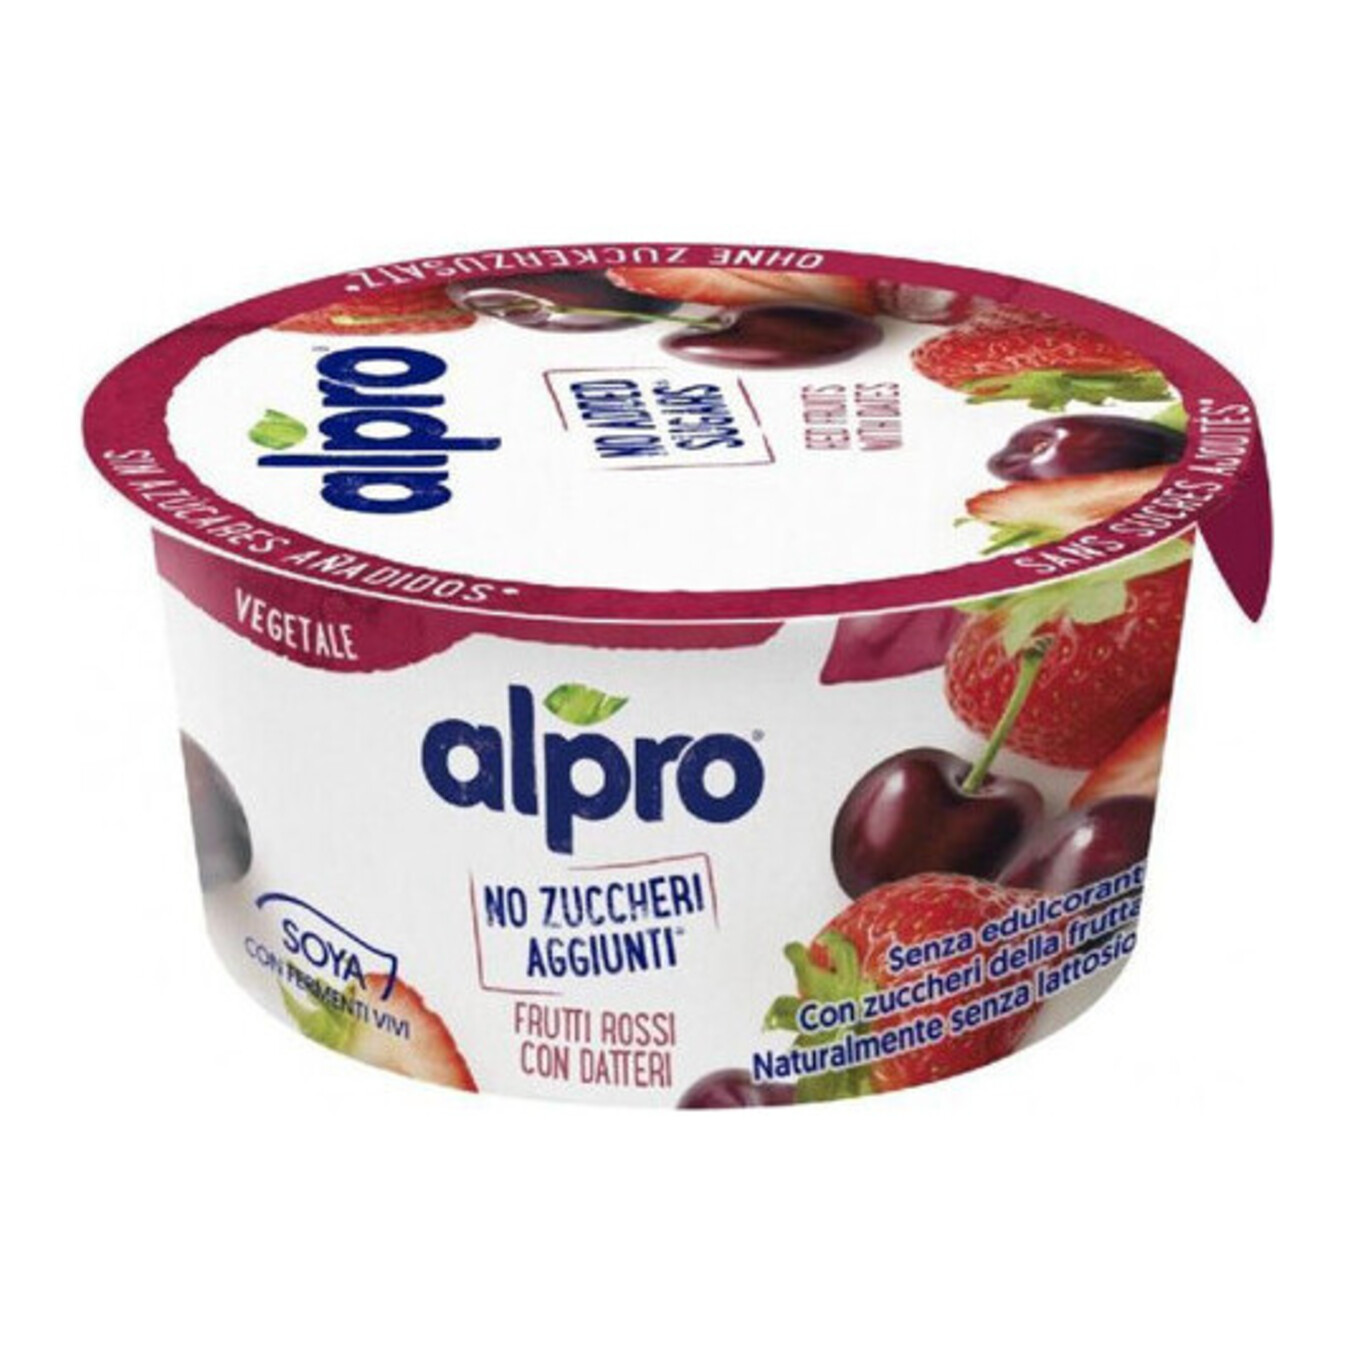 Продукт соевый Alpro ферментированный без сахара красные фрукты с финиками стакан 2,1% 135г